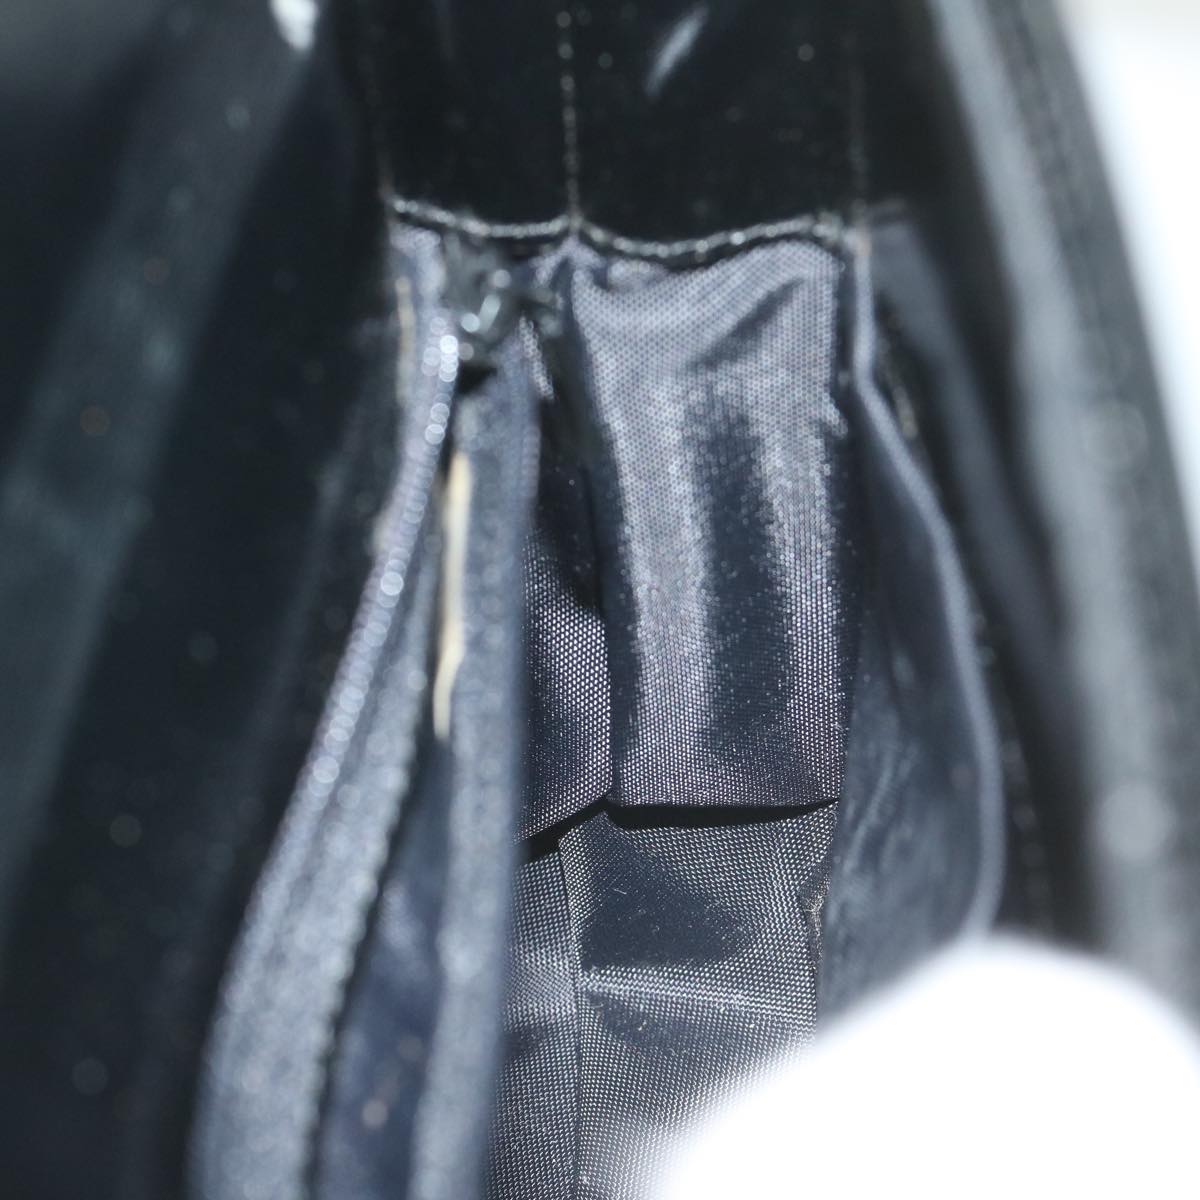 GIVENCHY Shoulder Bag Leather Black Auth 61044